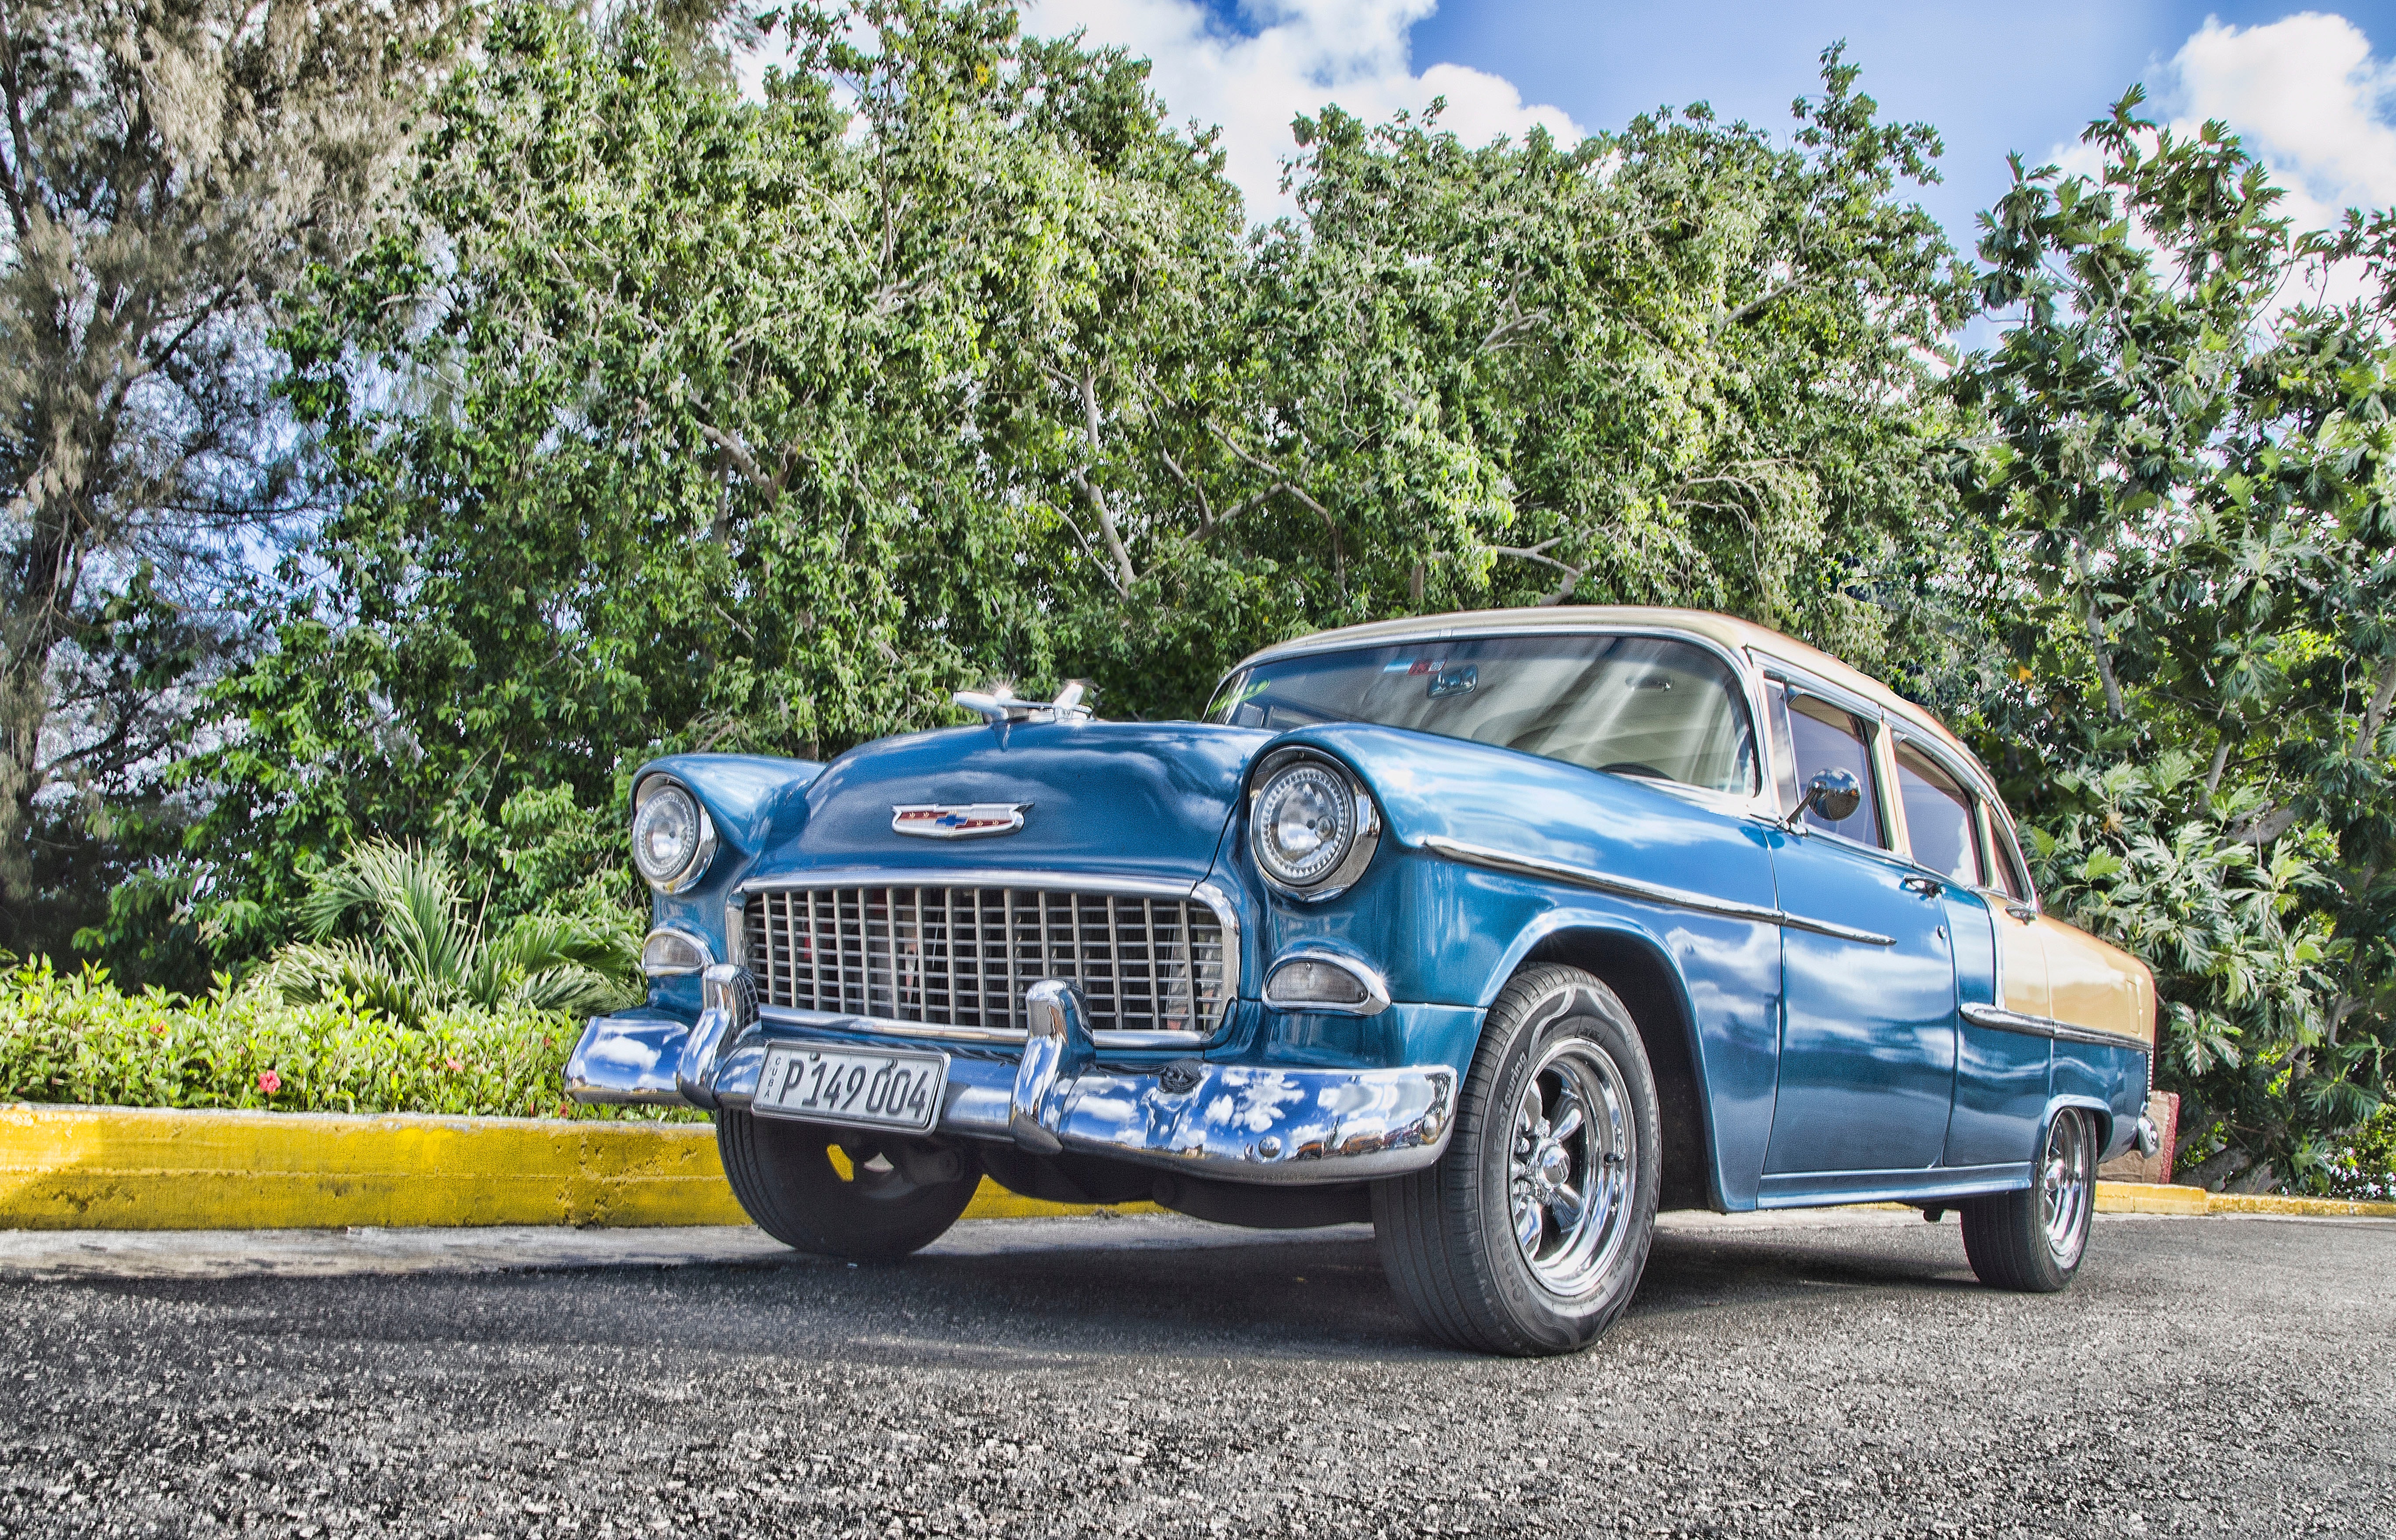 Vintage Blue Sedan, Asphalt, Park, Vintage, Vehicle, HQ Photo